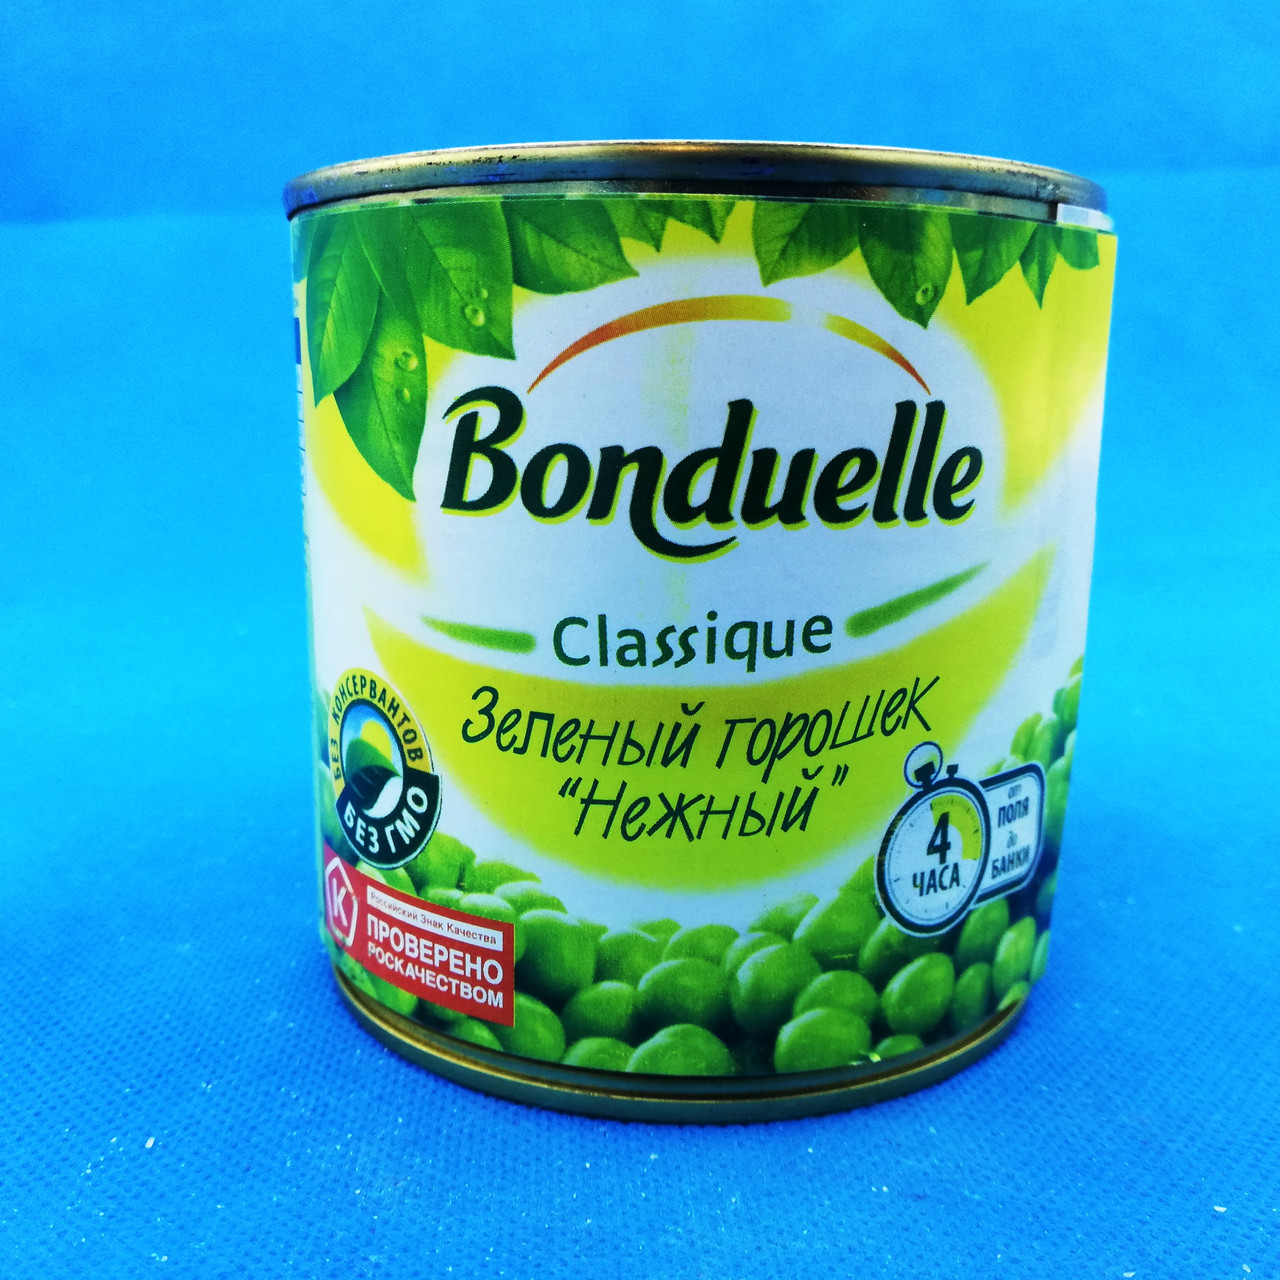 Зеленый горошек Нежный Bonduelle (Бондюэль), 425 гр